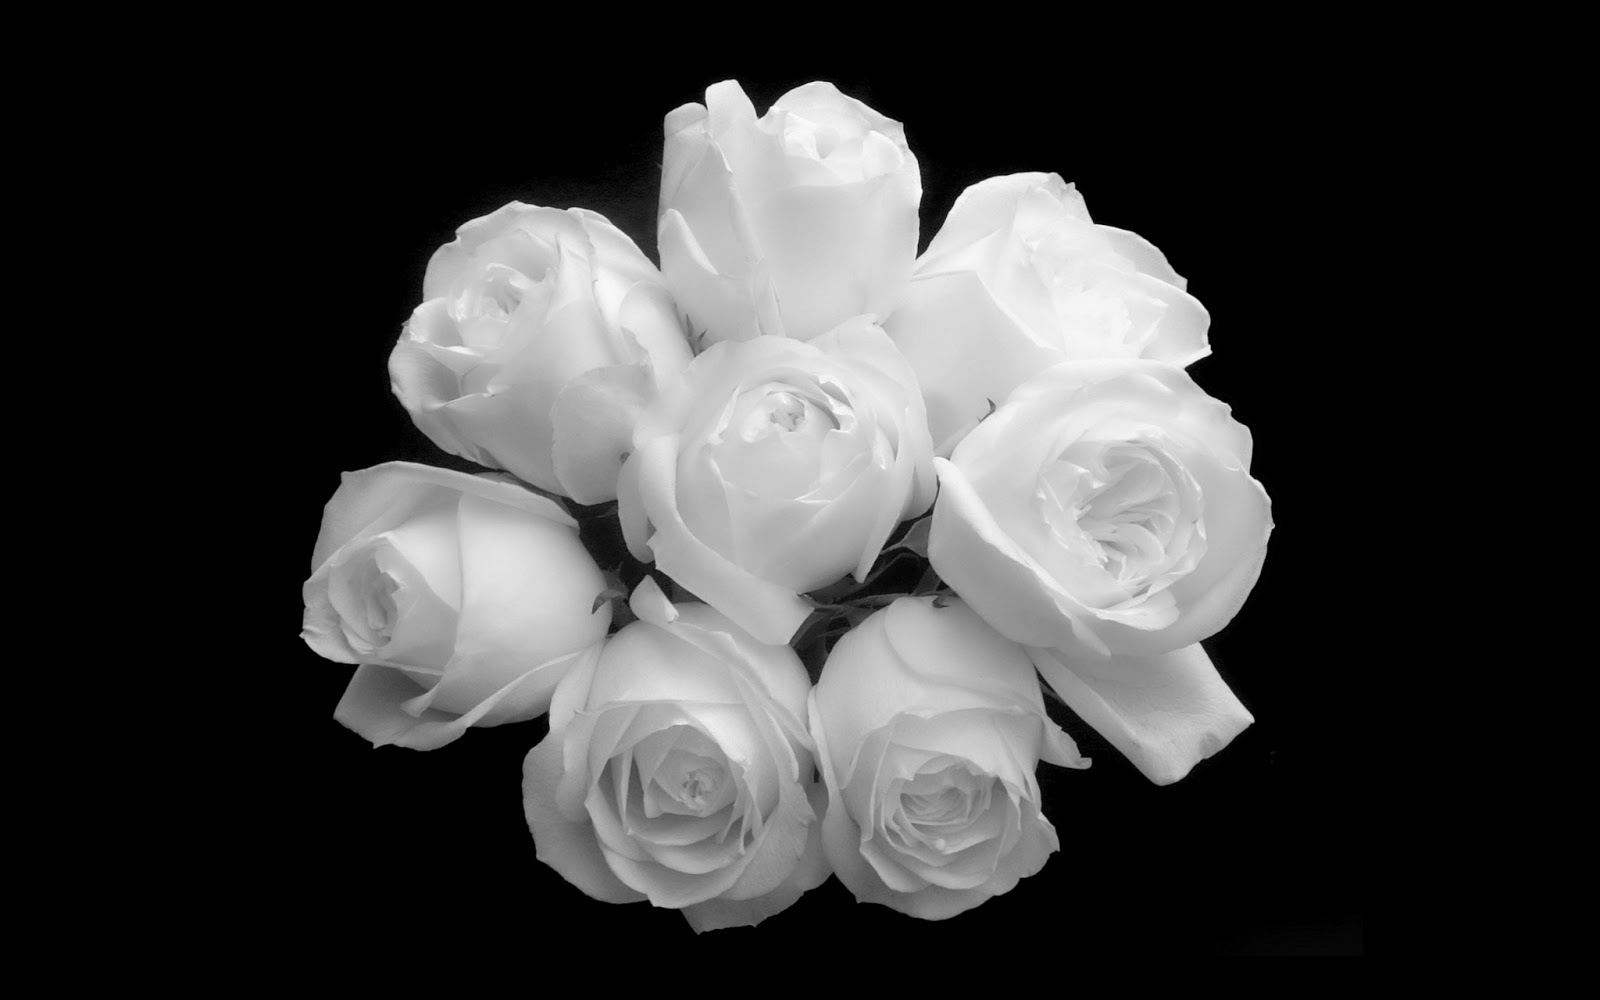 Tỏa sáng với những cánh hoa hồng trắng đẹp tinh khôi và lan tỏa nét duyên dáng quyến rũ. Hình ảnh nền hoa hồng trắng sẽ đưa bạn vào một thế giới đầy mê hoặc và nữ tính.